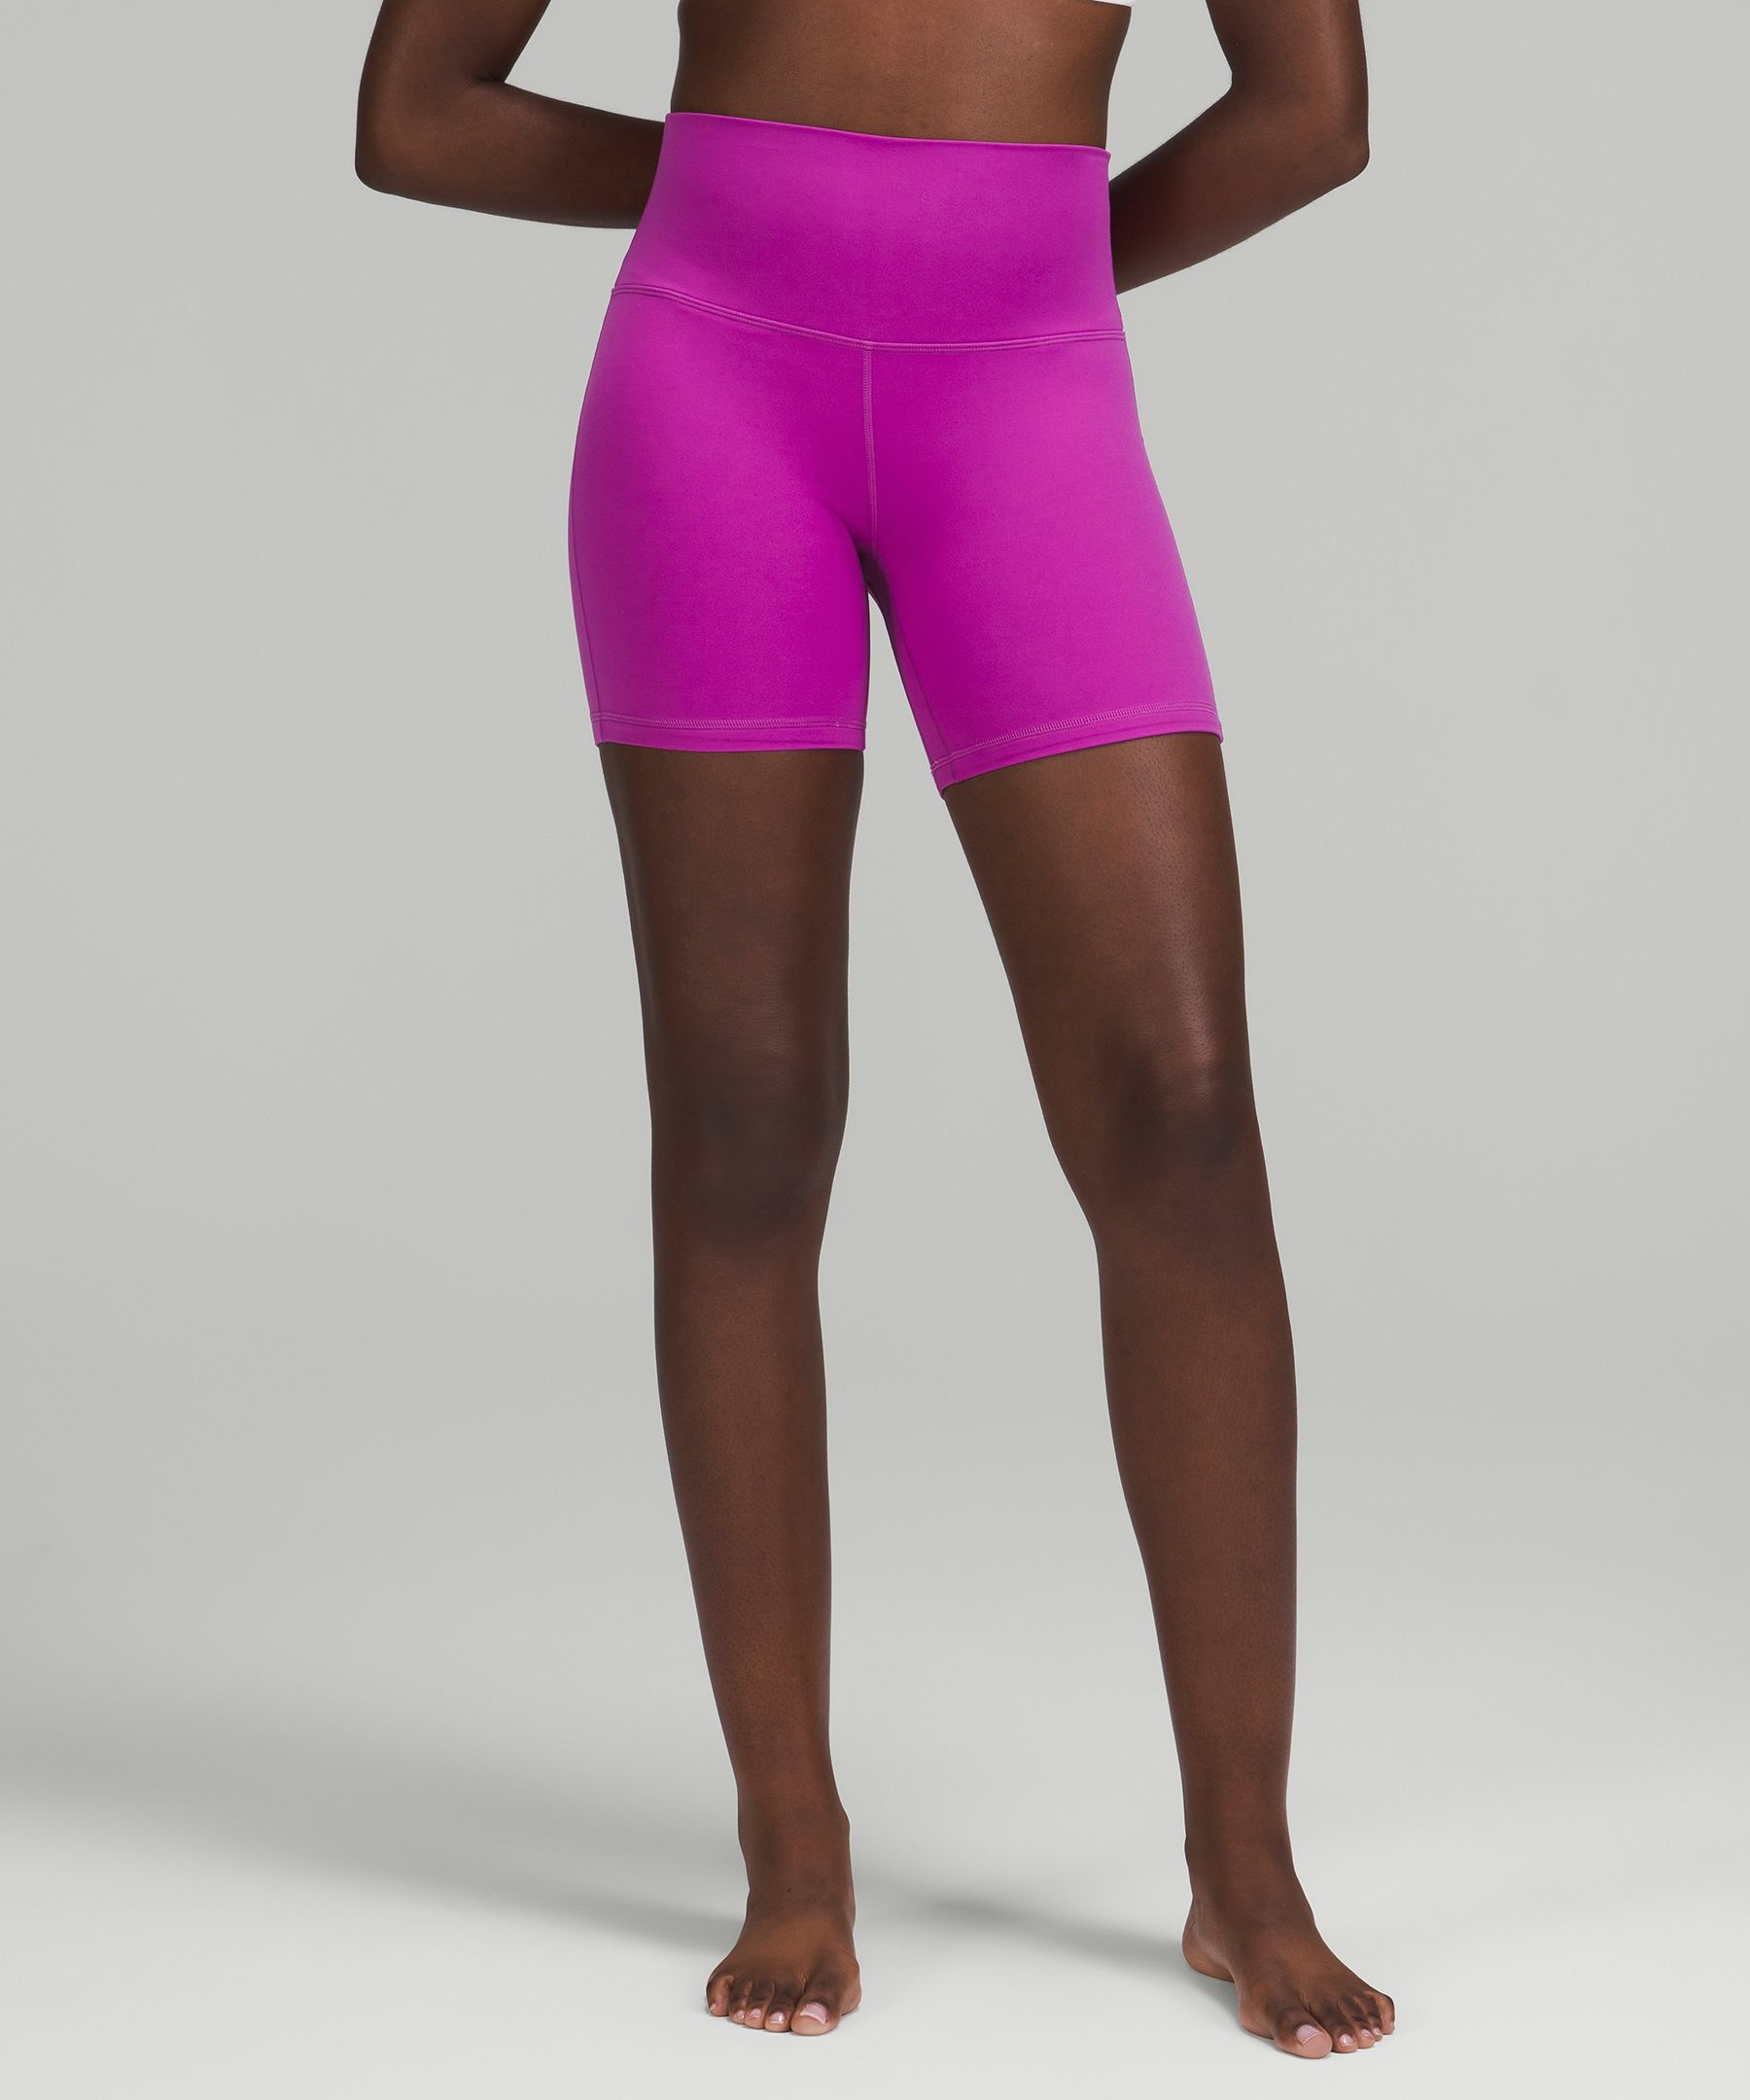 Lululemon Align™ High-rise Shorts 6" In Vivid Plum